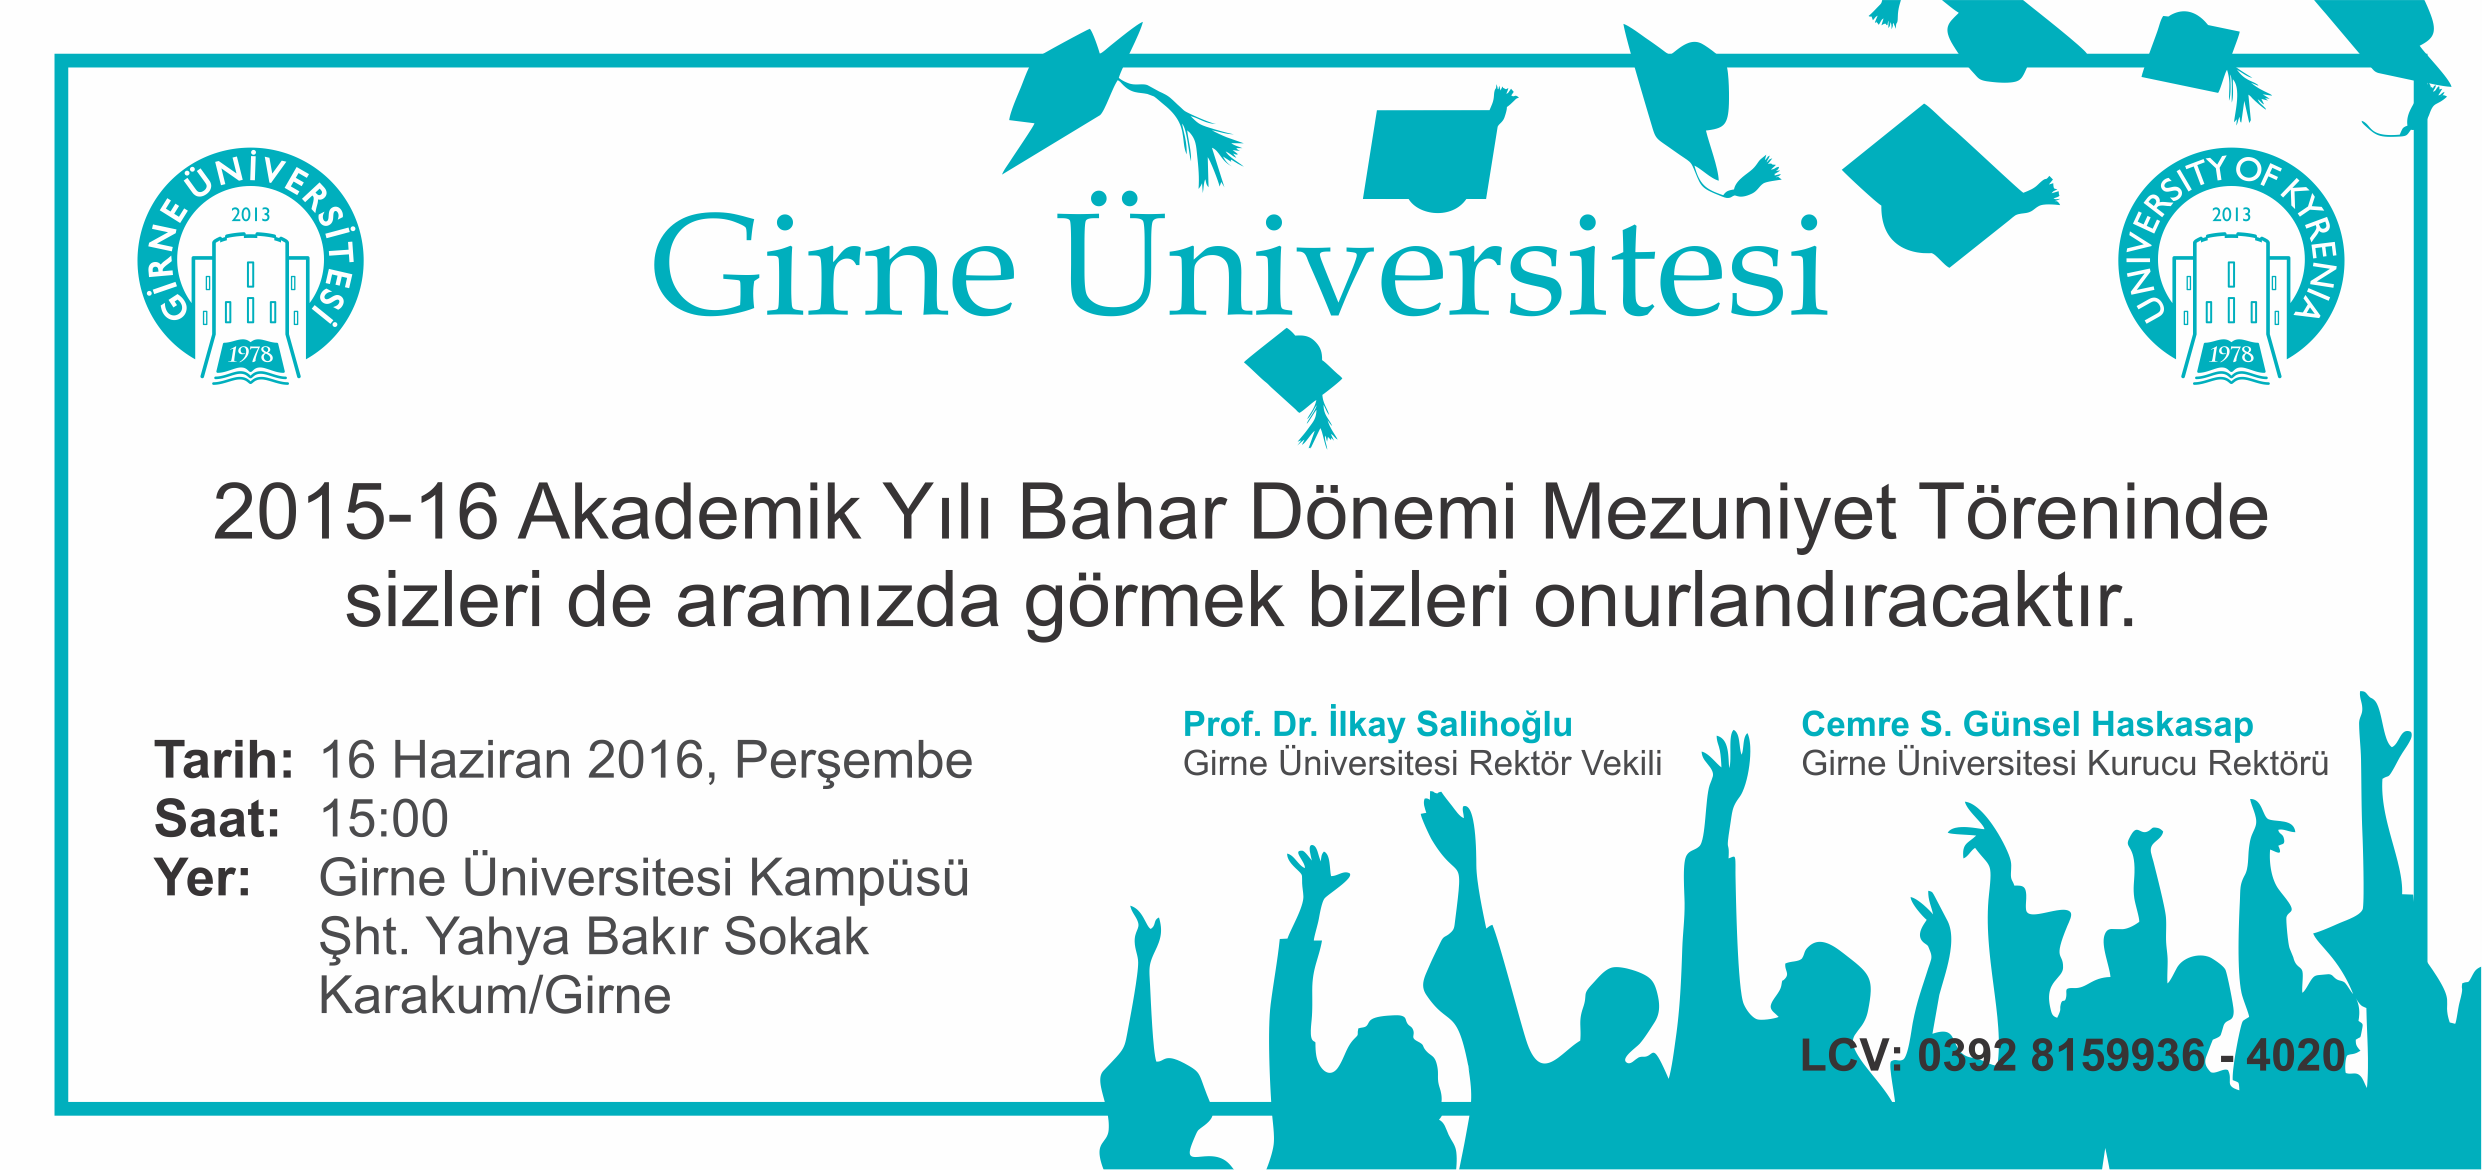 Kardeş Üniversitemiz Girne Üniversitesi’nin Mezuniyet Töreni